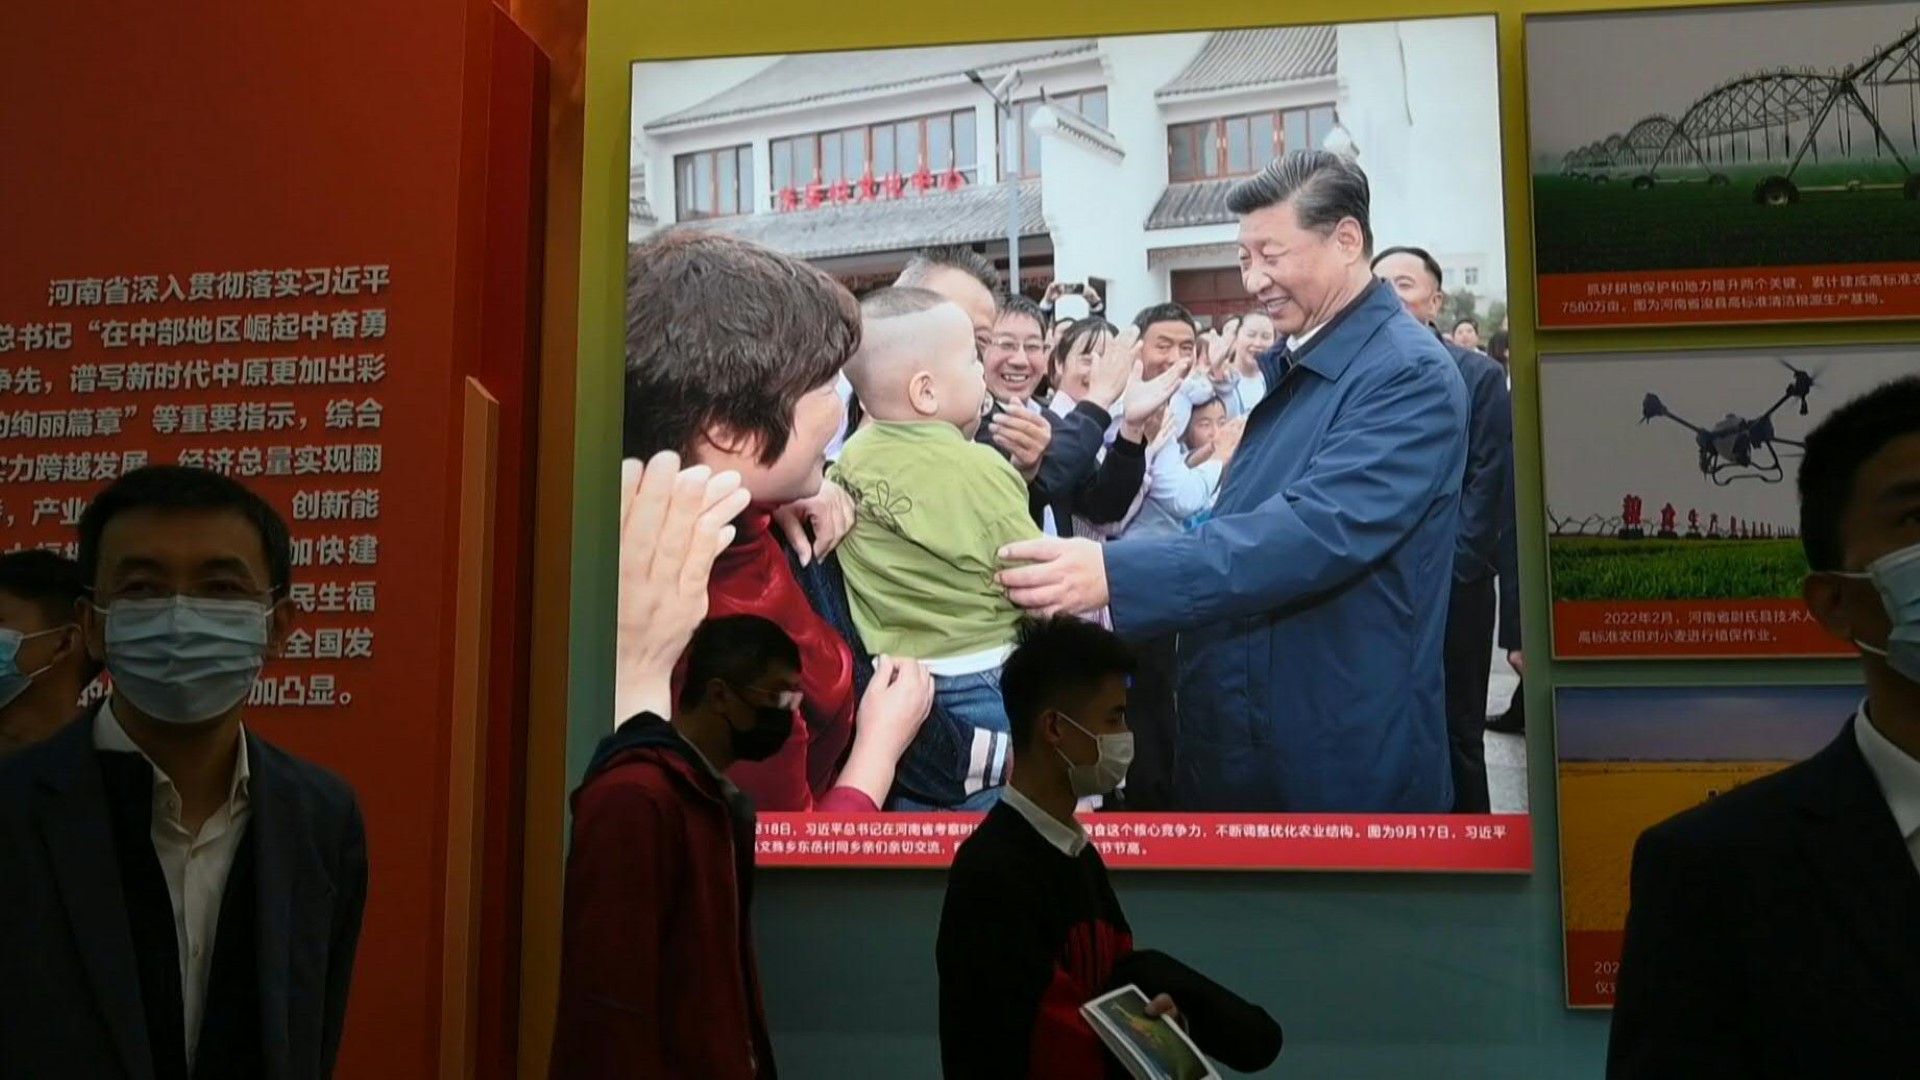 En Pekín, una exposición del Partido Comunista, que incluye misiles balísticos, robots desinfectantes o muestras lunares, busca ensalzar diez años de éxitos bajo la China de Xi Jinping, que está a punto de volver a ocupar un tercer mandato inédito (AFP)